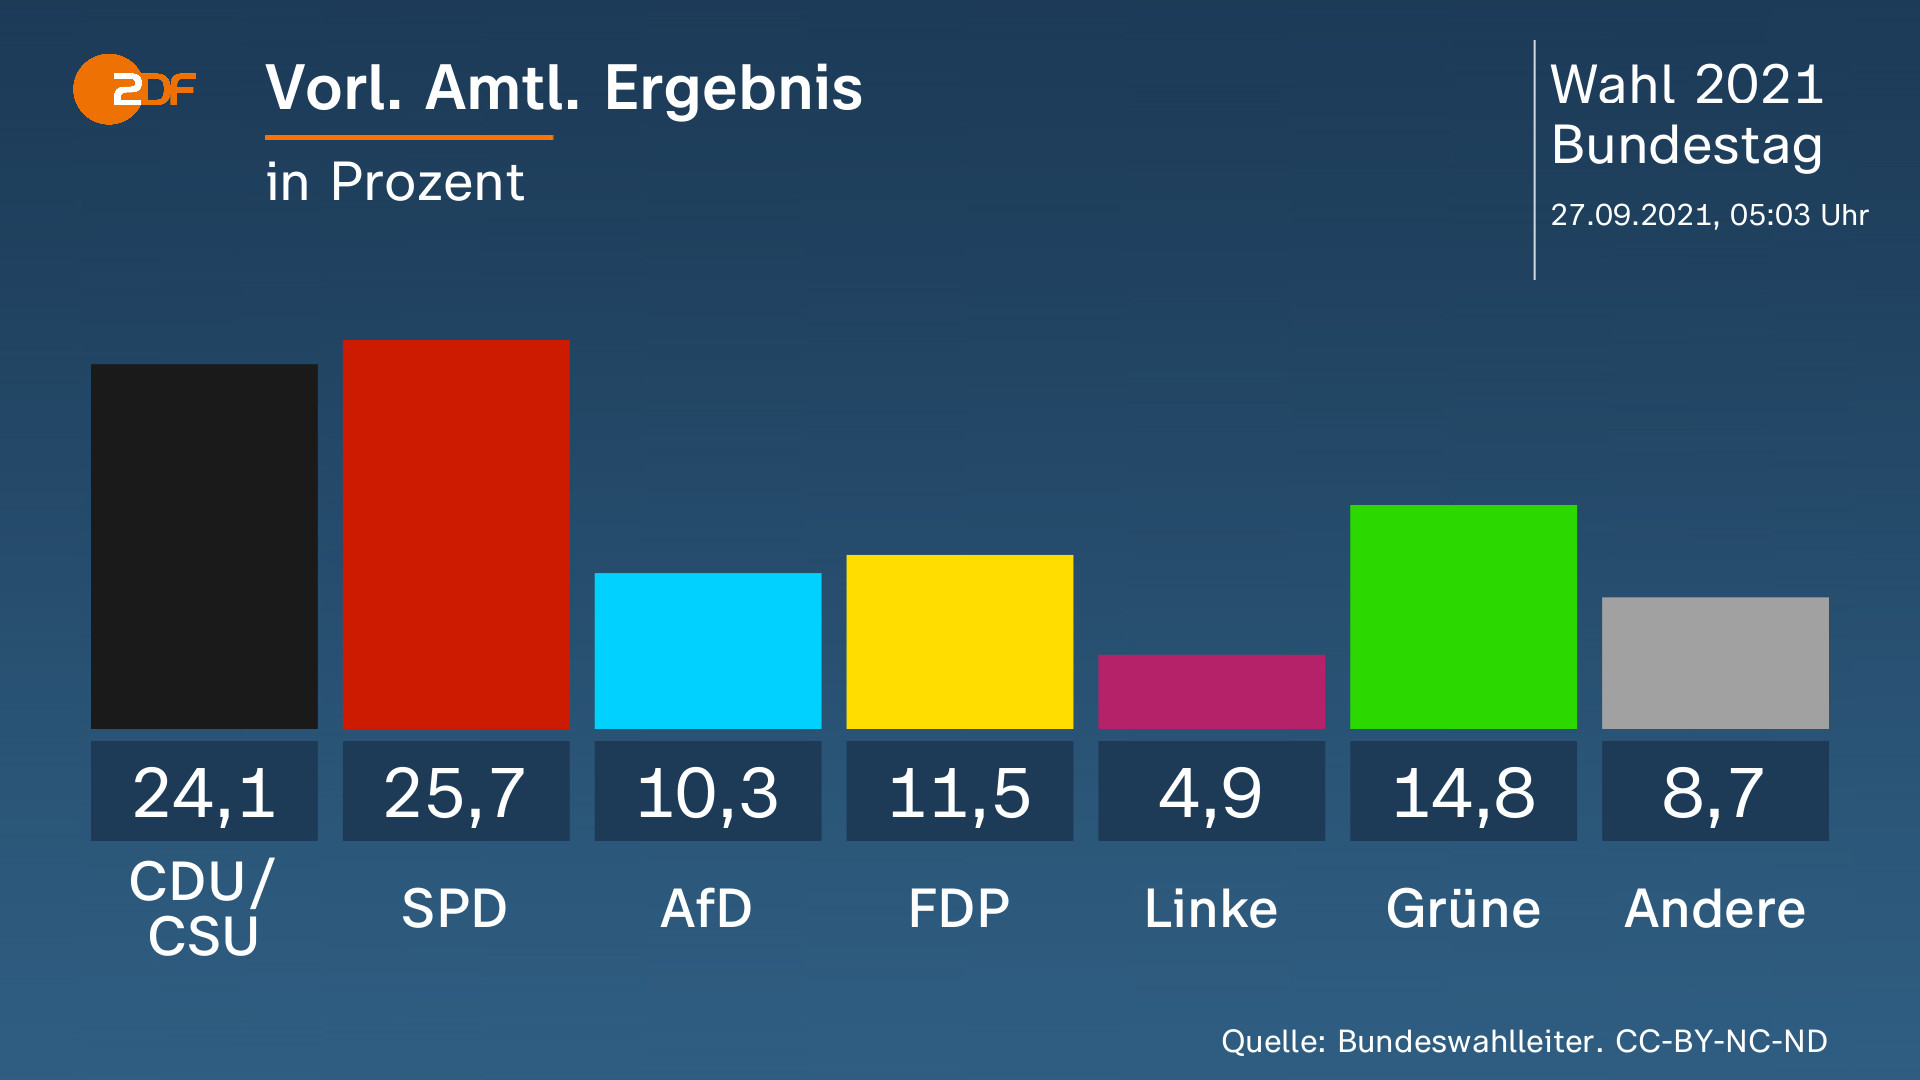 CDU/CSU YENİLDİ
16 yıllık iktidarın tarihi kayıpla bitirdi. Yüzde 40'ların üzerindeki oy yüzde 24'e kadar geriledi. Başbakan adayı Laschet ilan edildikten sonra oy kaybı daha da arttı. Laschet, yenilgiyle çıkmasına rağmen, daha ilk açıklamasında "SPD'siz koalisyon" mesajı verdi.